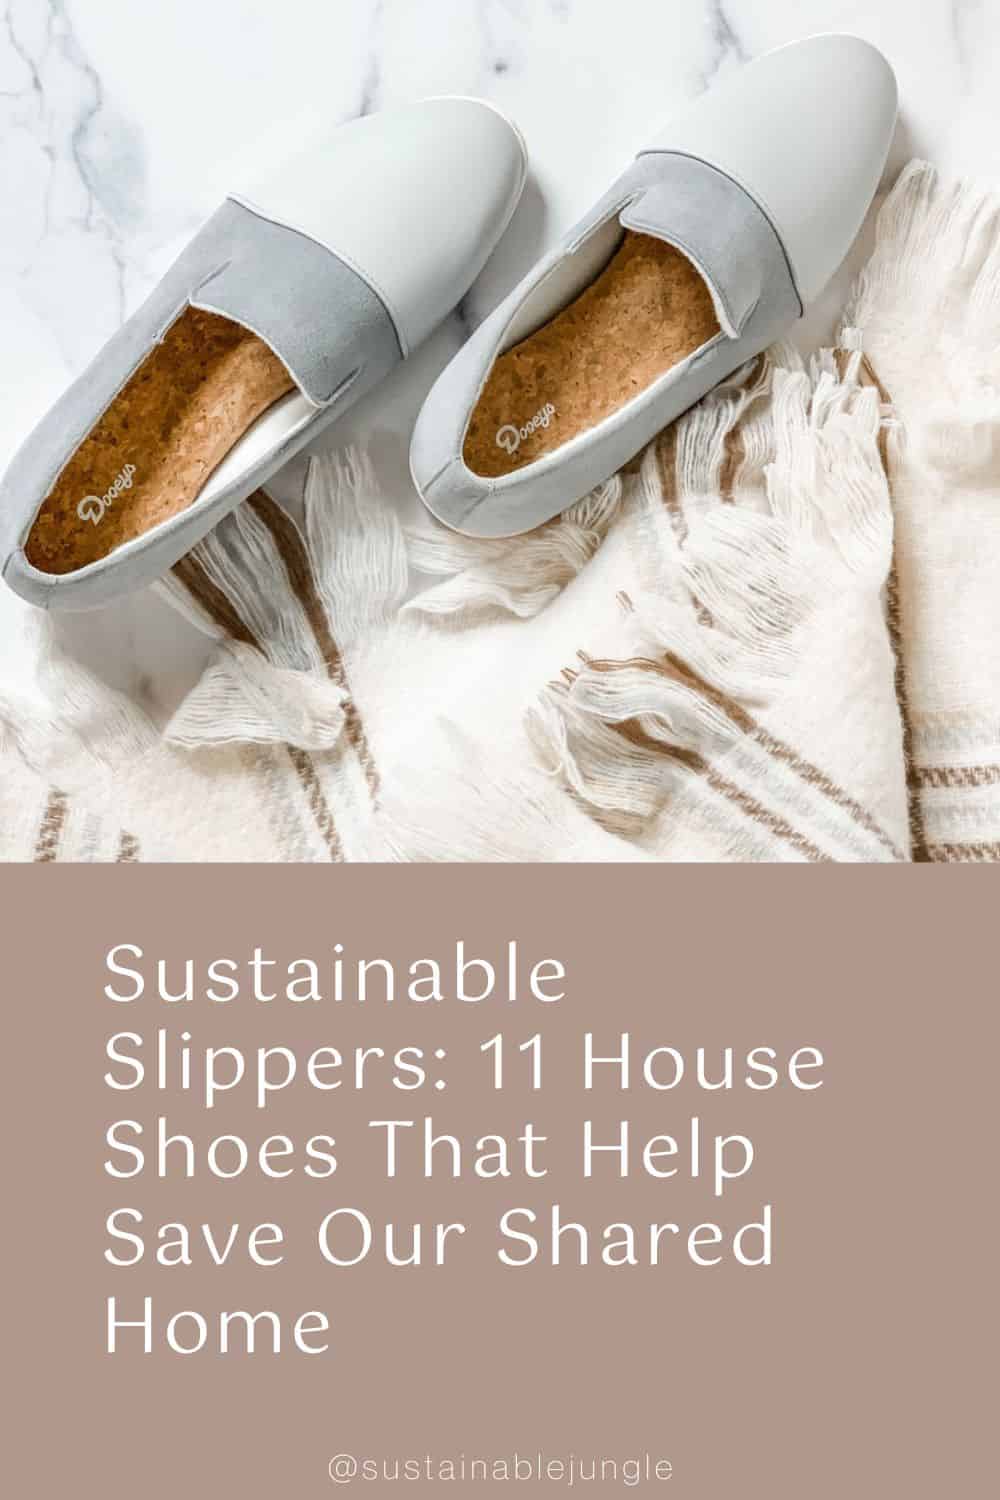 可持续拖鞋:11种帮助拯救我们共同家庭形象的家庭鞋，由Dooeys设计#可持续拖鞋#最佳可持续拖鞋#生态友好拖鞋#道德拖鞋#可持续丛林